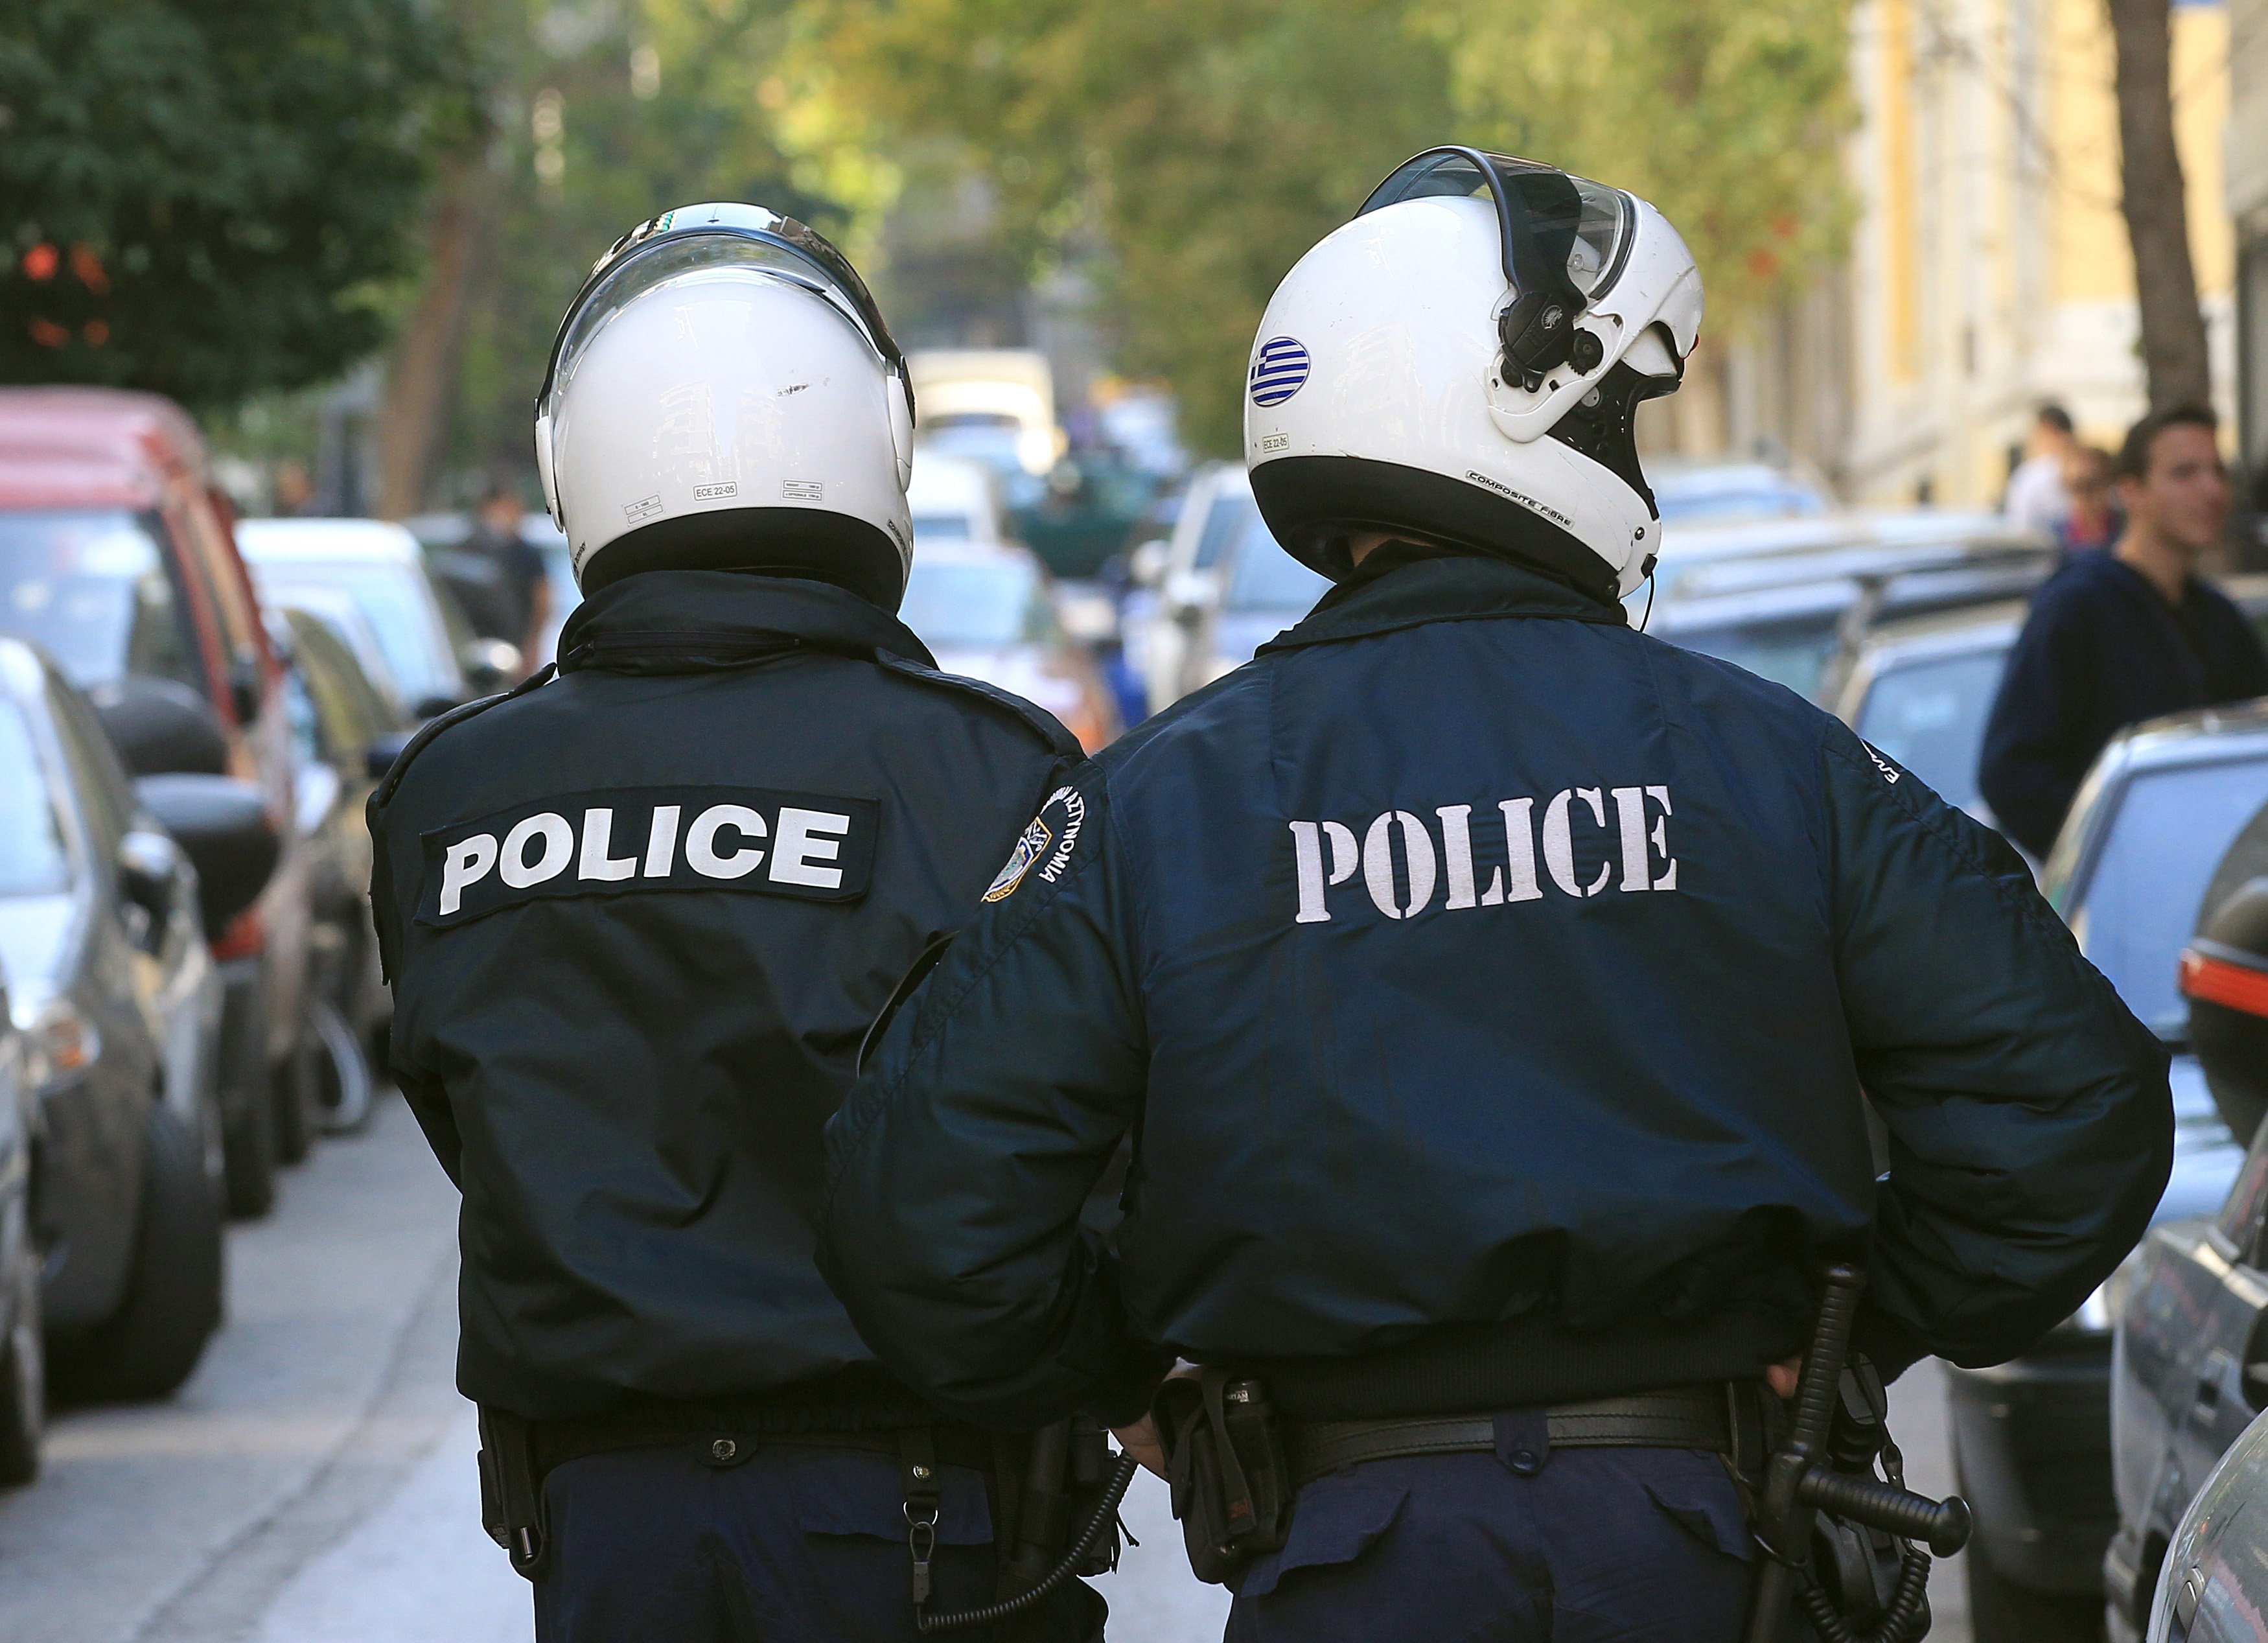 Οι εισαγγελείς ζητούν να εξαιρεθούν από την κατάργηση της αστυνομικής φρούρησης διότι είναι «στόχοι»